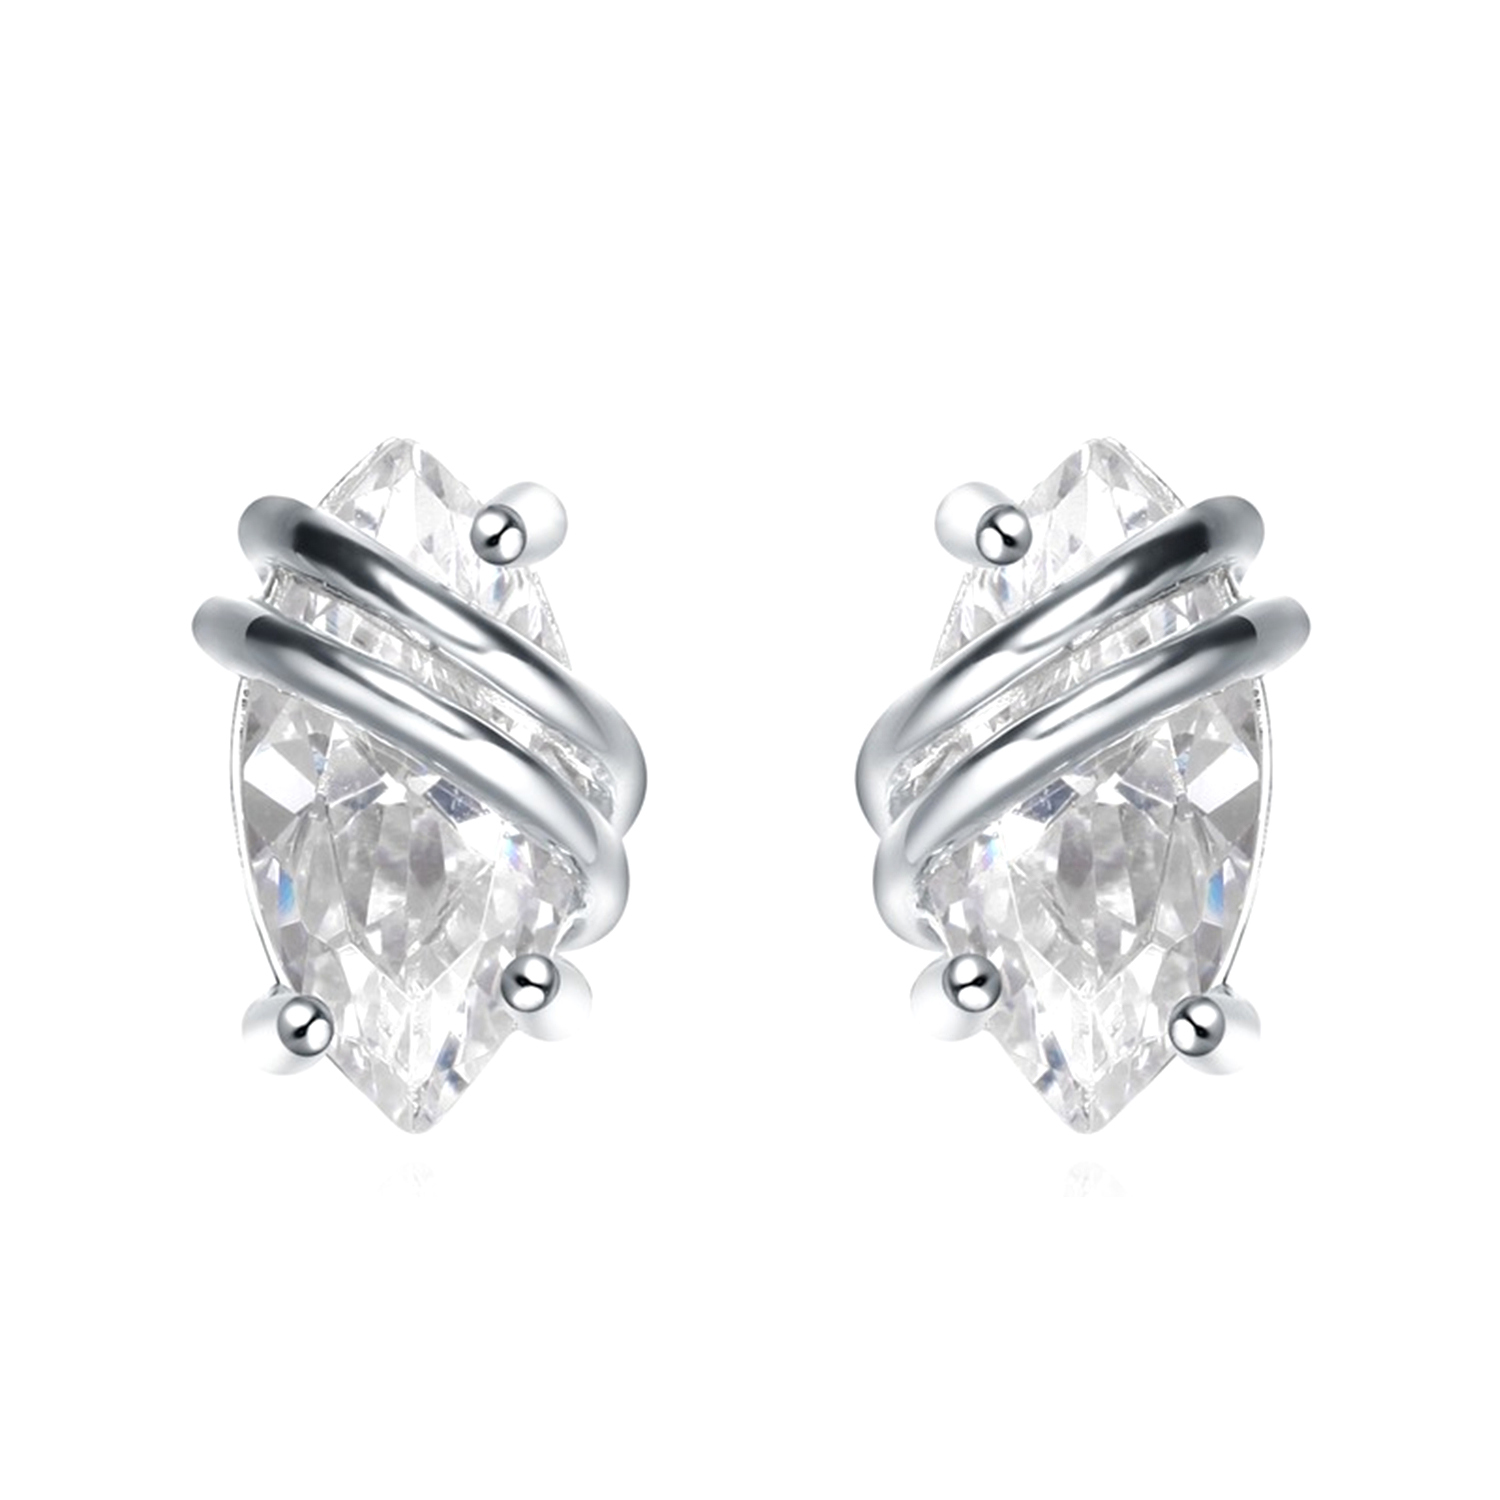 Minimalist earrings Sterling Silver Surrounding Bling CZ Simple Style Little Earring Stud Jewelry(图3)